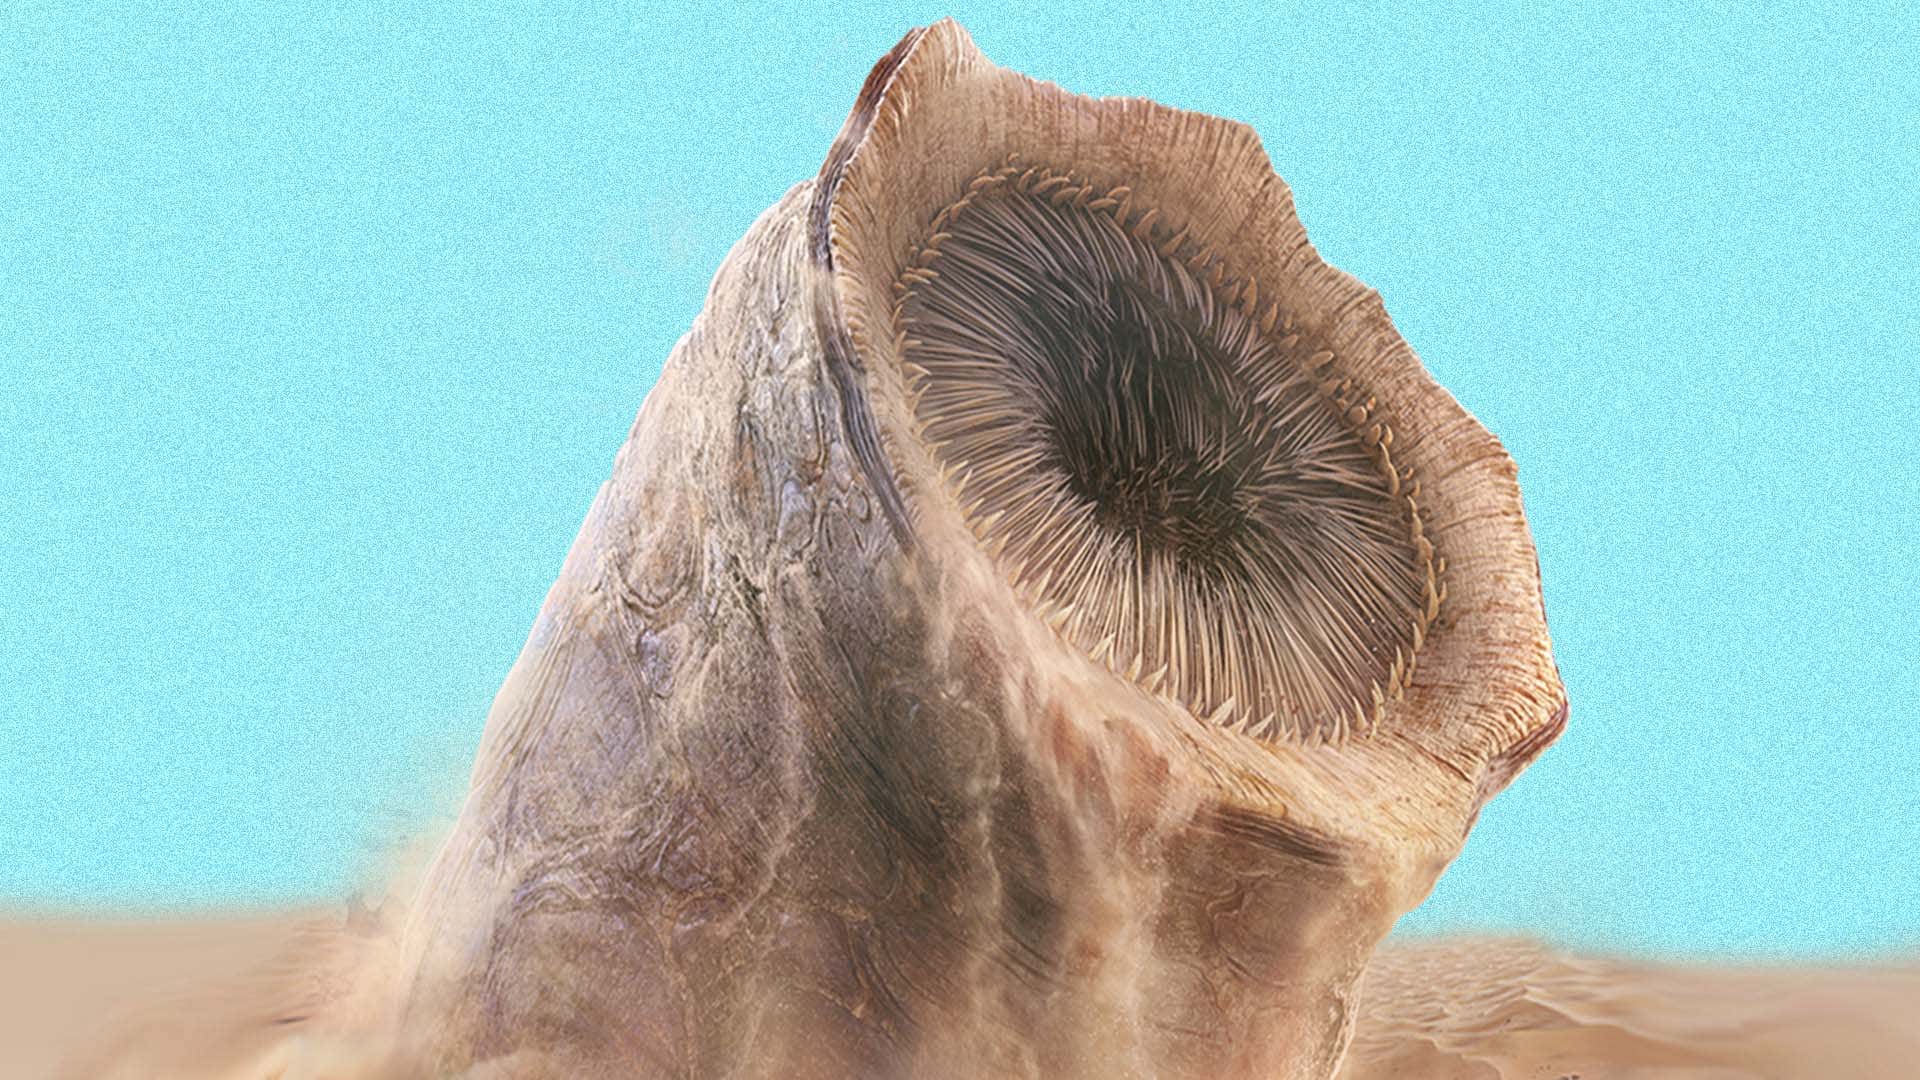 Ein Bild zeigt einen riesigen Wurm von Dune, der aus dem Sand springt. 